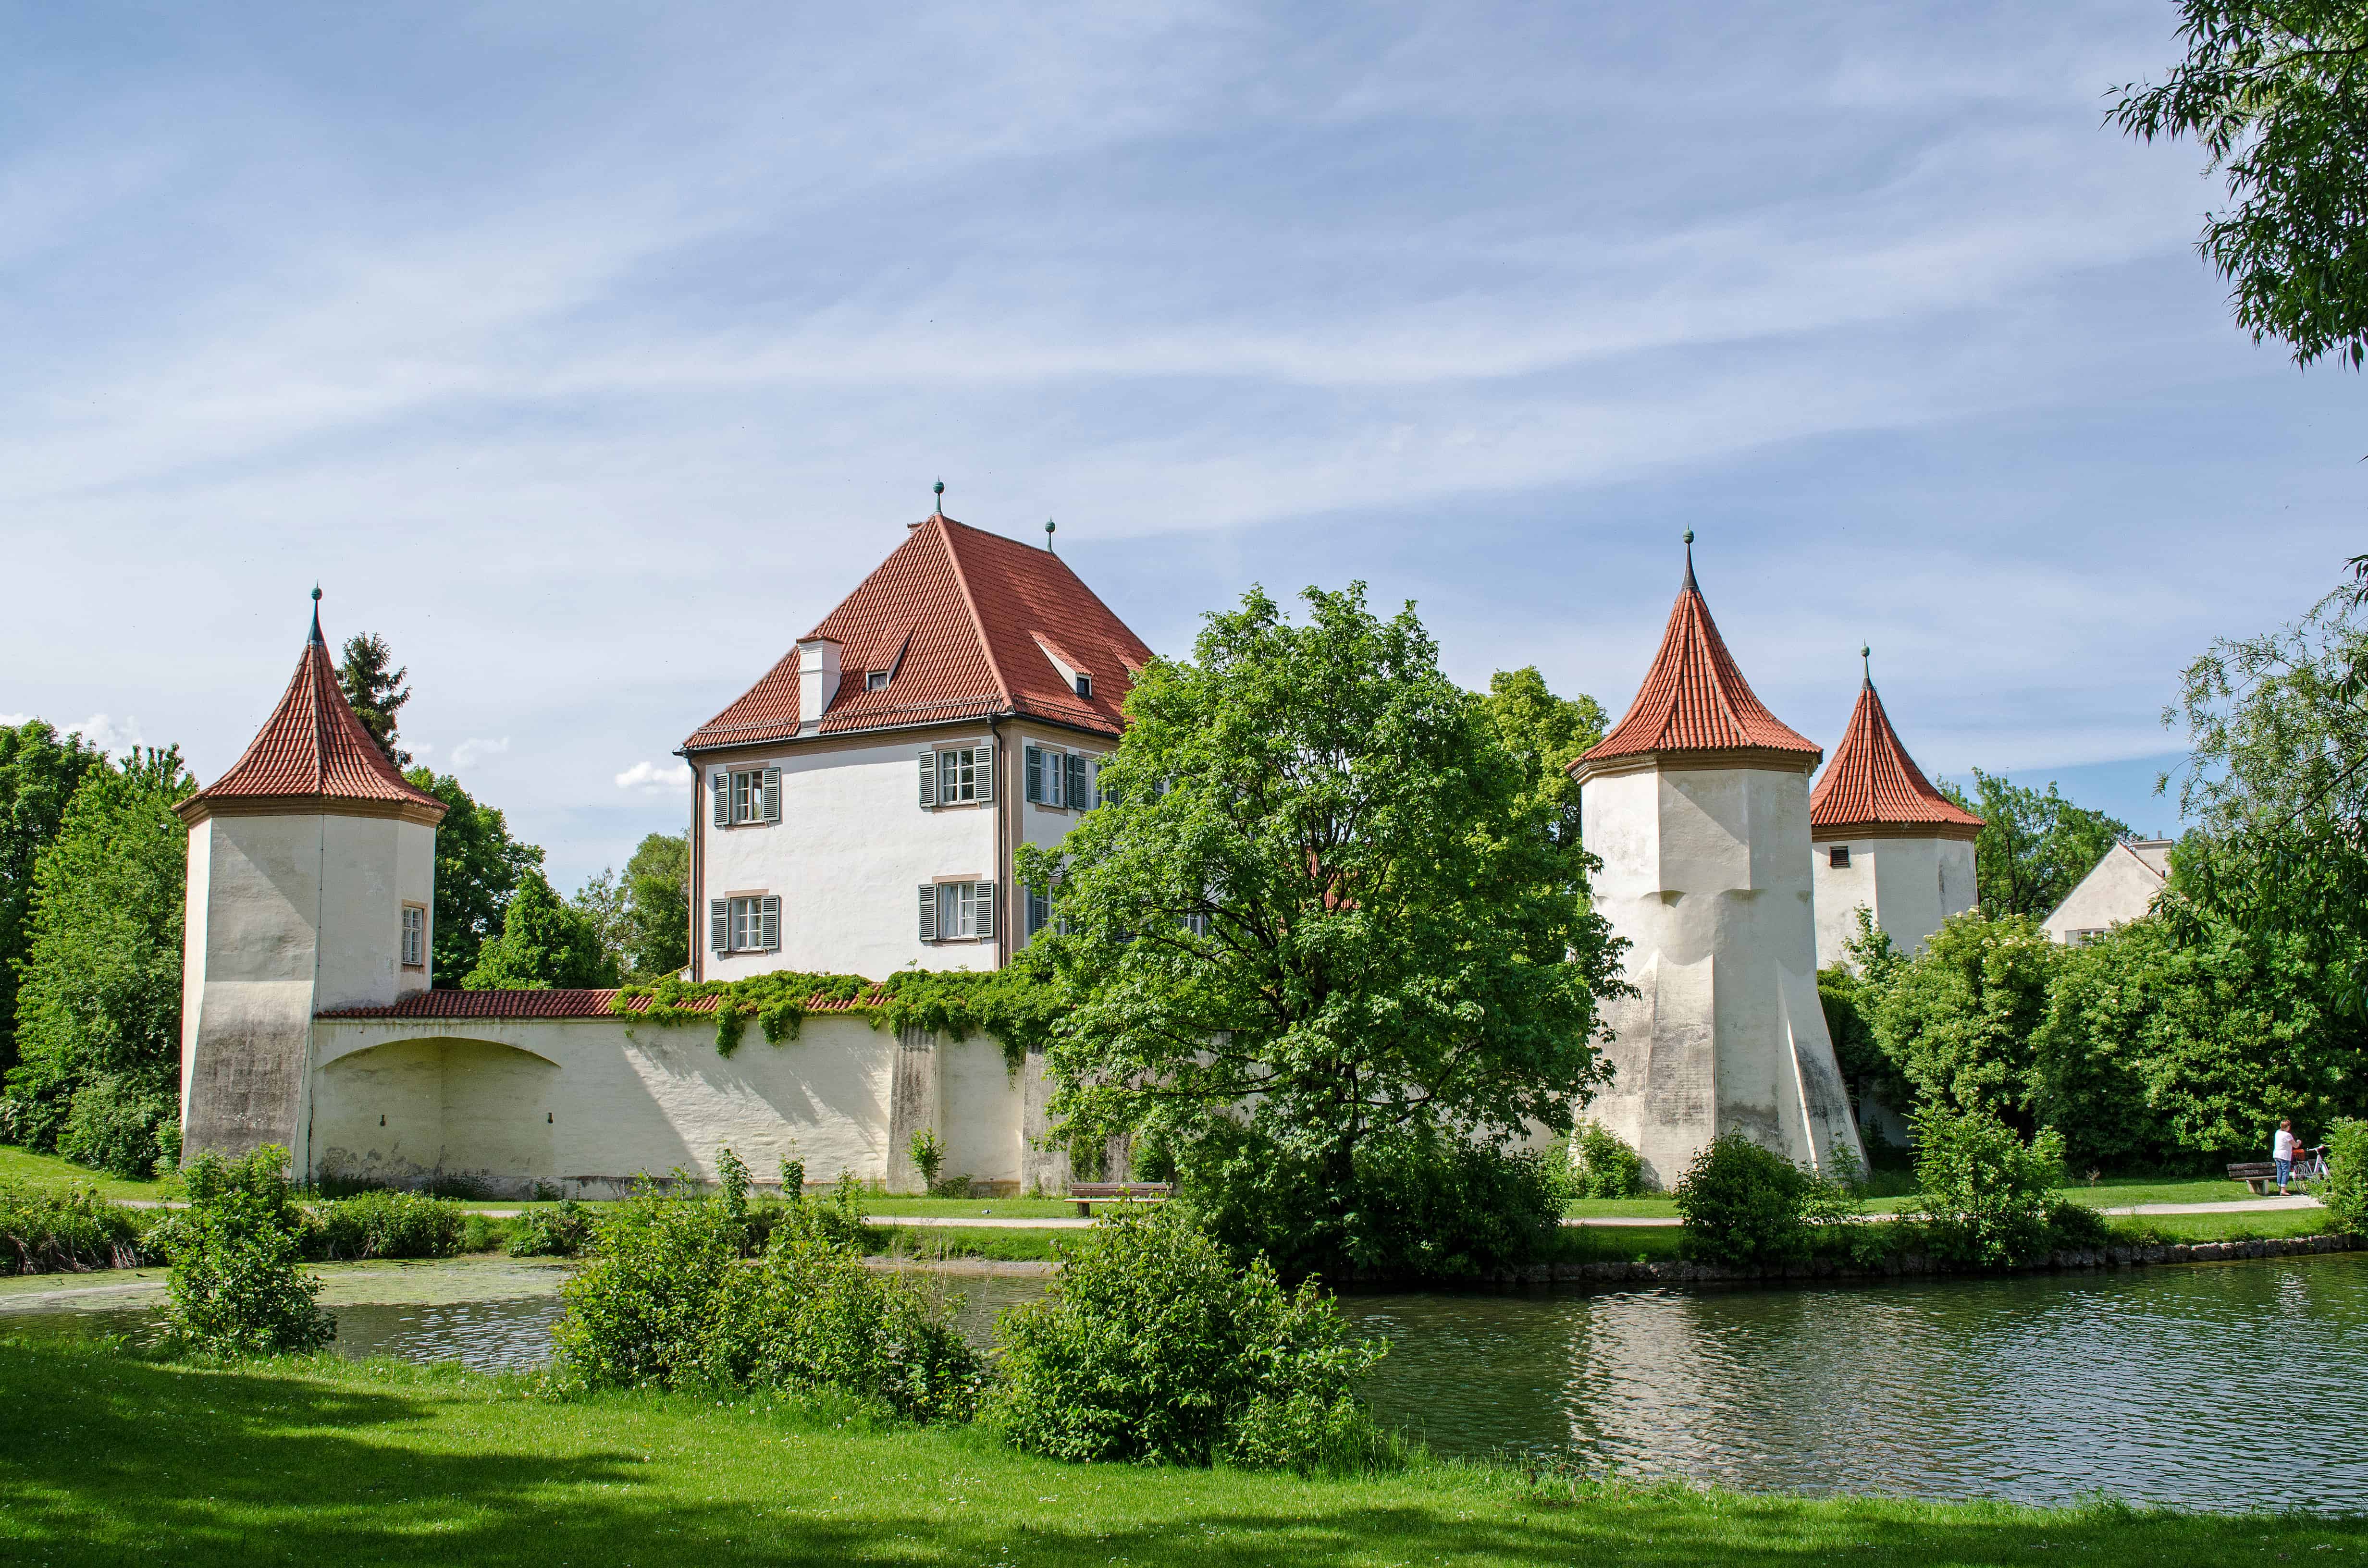 Blutenburg城堡